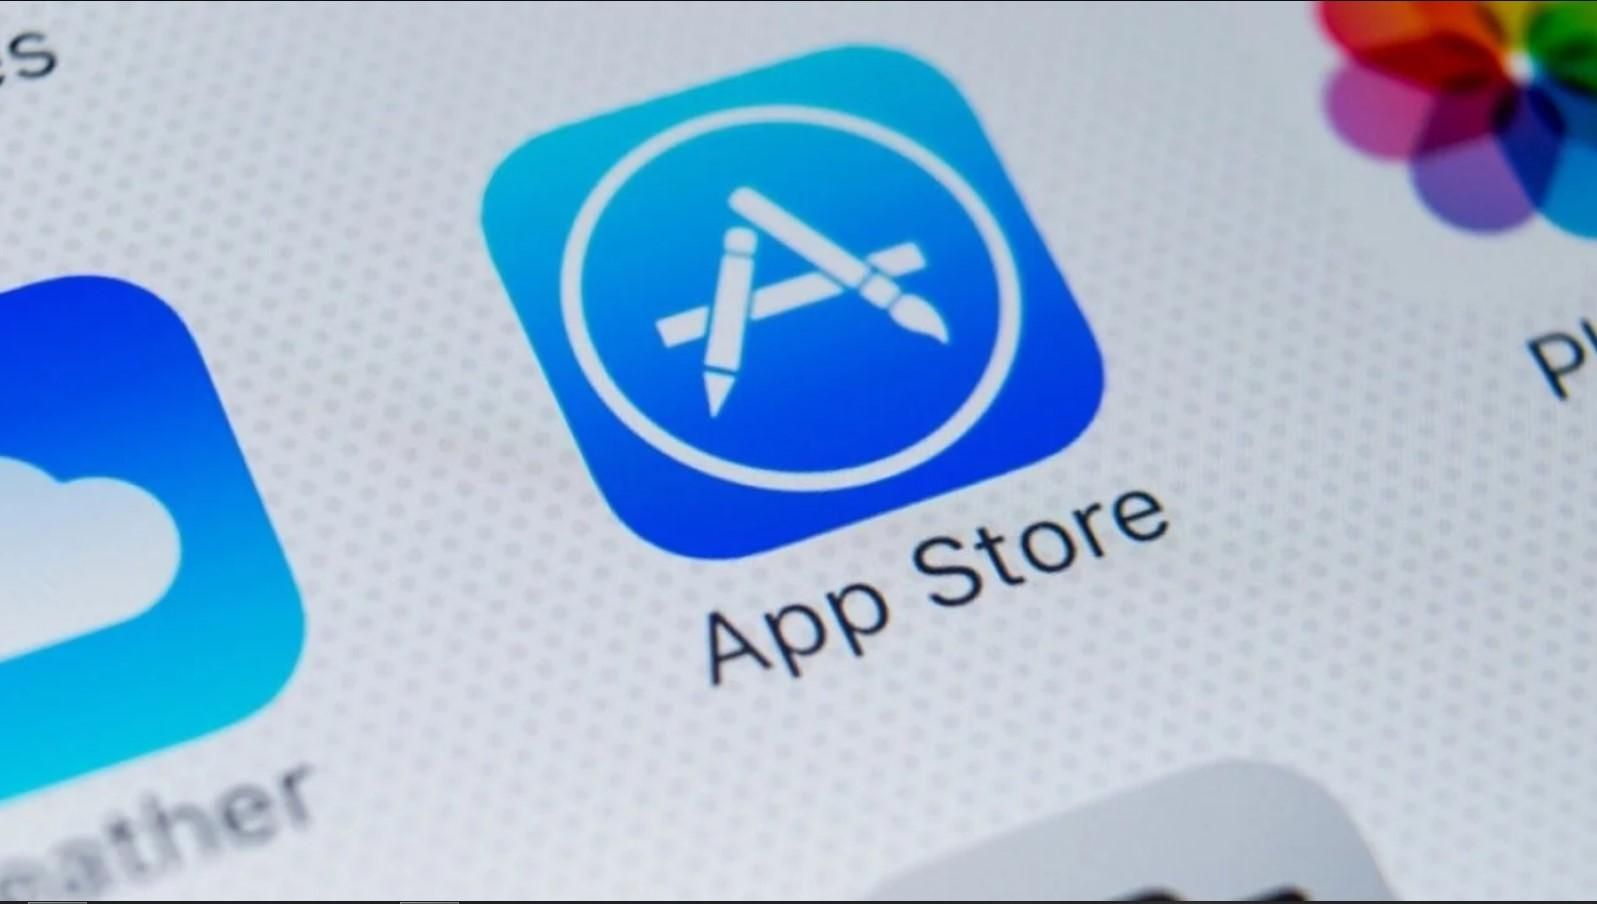 App Store весомый источник доходов Apple